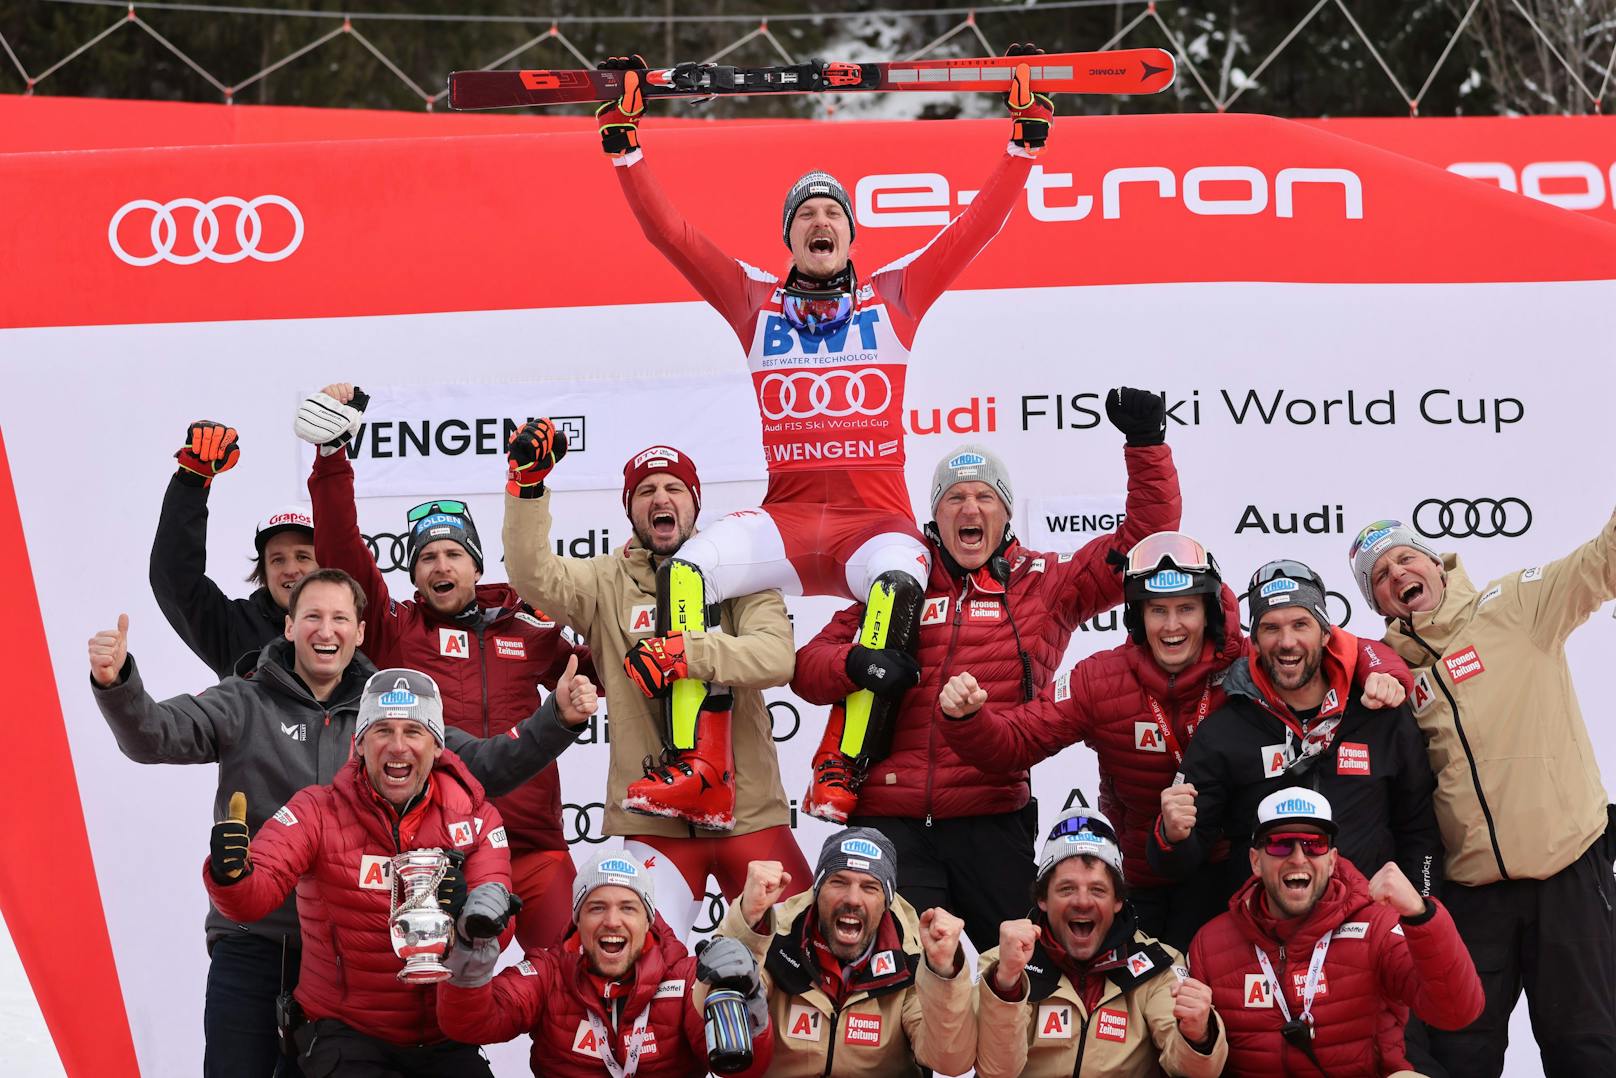 Wer, wenn nicht Manuel Feller? Im vierten Saison-Slalom feierte der ÖSV-Star seinen dritten Sieg. Die beiden Norweger Atle Lie McGrath und Henrik Kristoffersen komplettierten das Podest. Mit Michael Matt (7.) und Fabio Gstrein (8.) fuhren zwei weitere Österreicher in die Top-10.